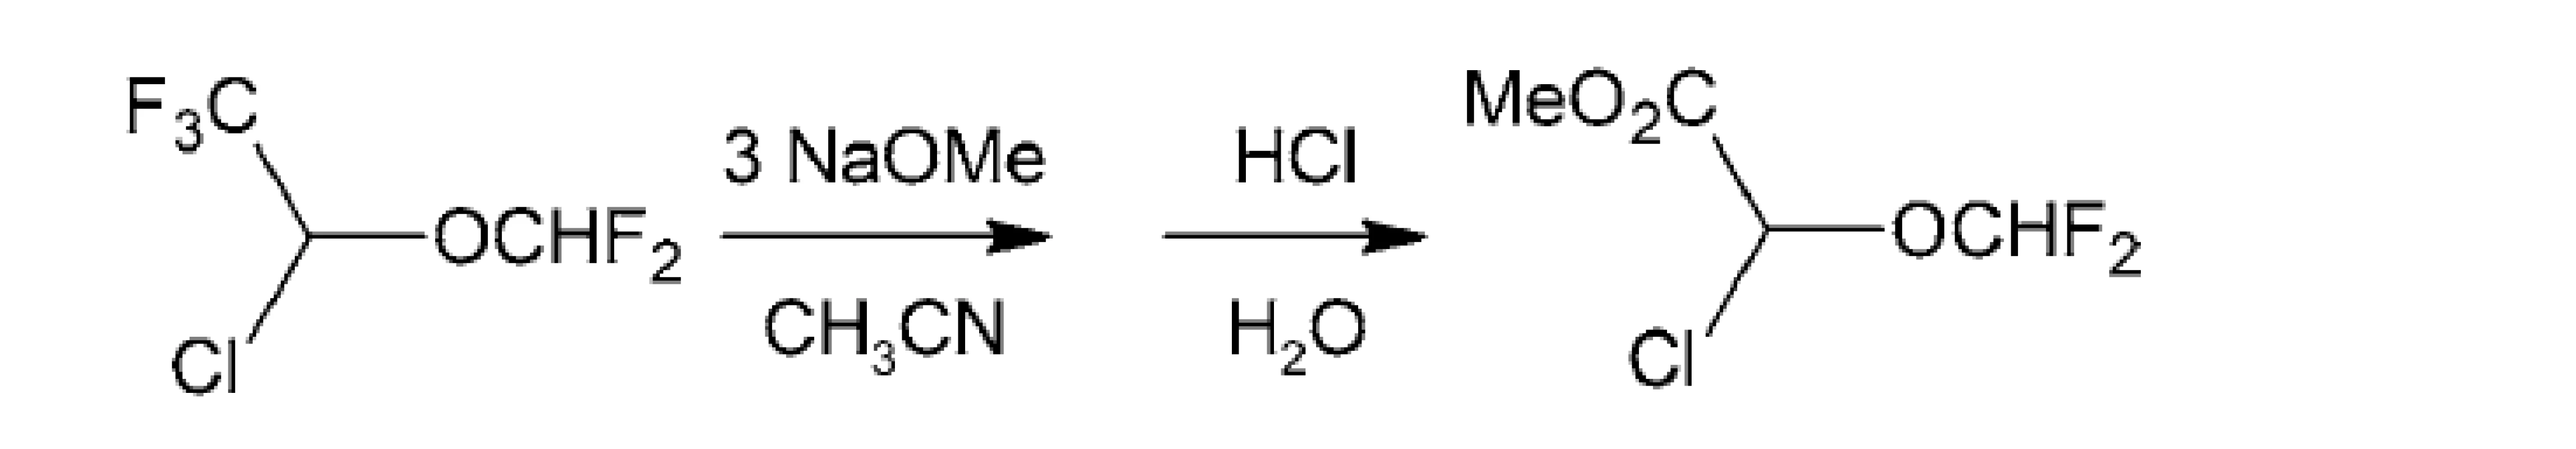 Príprava difluórmetyléterov chemoselektívnou metanolýzou
trifluórmetylskupín